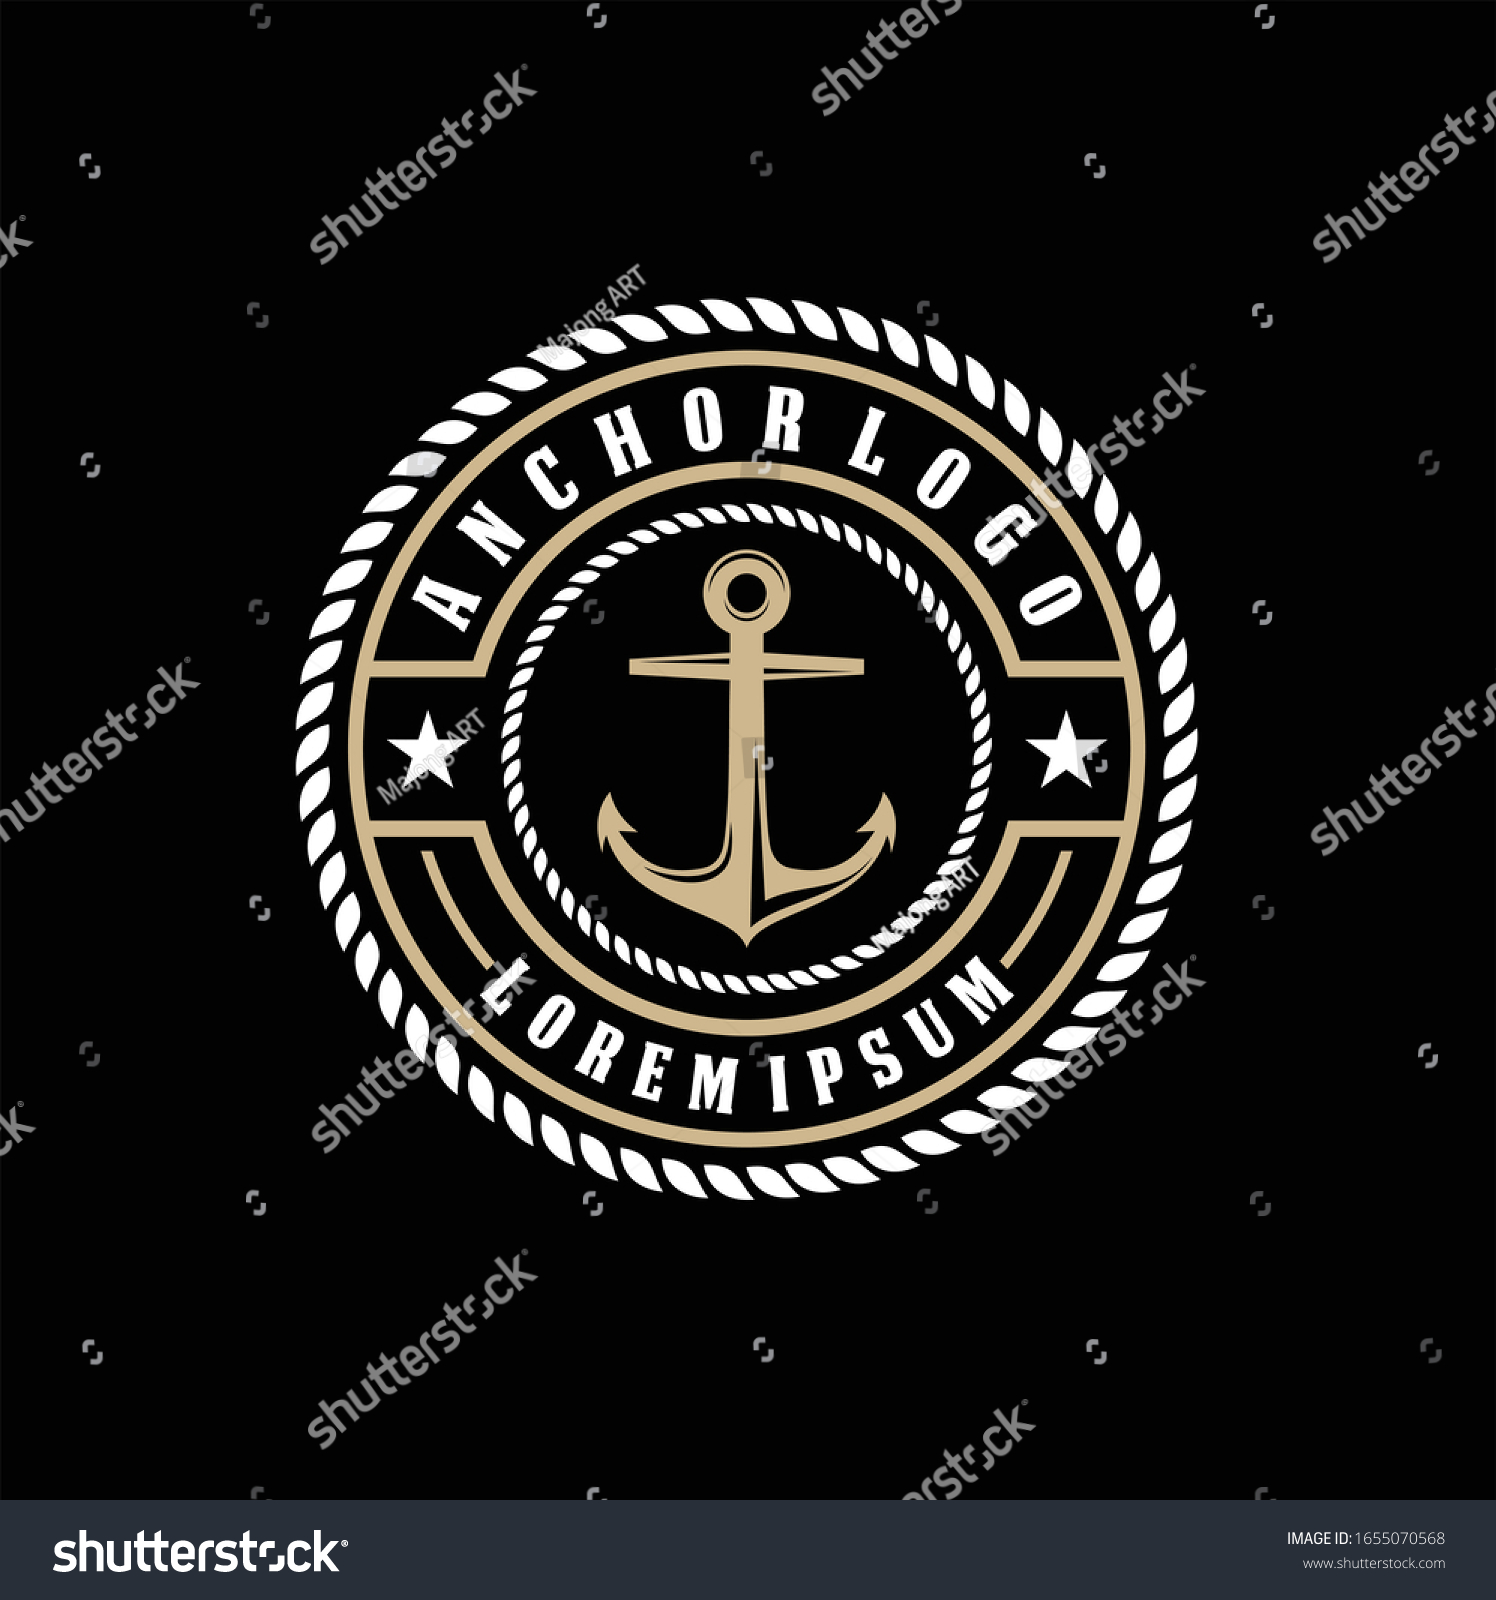 SVG of Vintage label with an anchor and slogan, Vector illustration, anchor icon on black background, Simple shape for design logo, emblem, symbol, sign, badge, label, stamp, Apparel t-shirt design svg